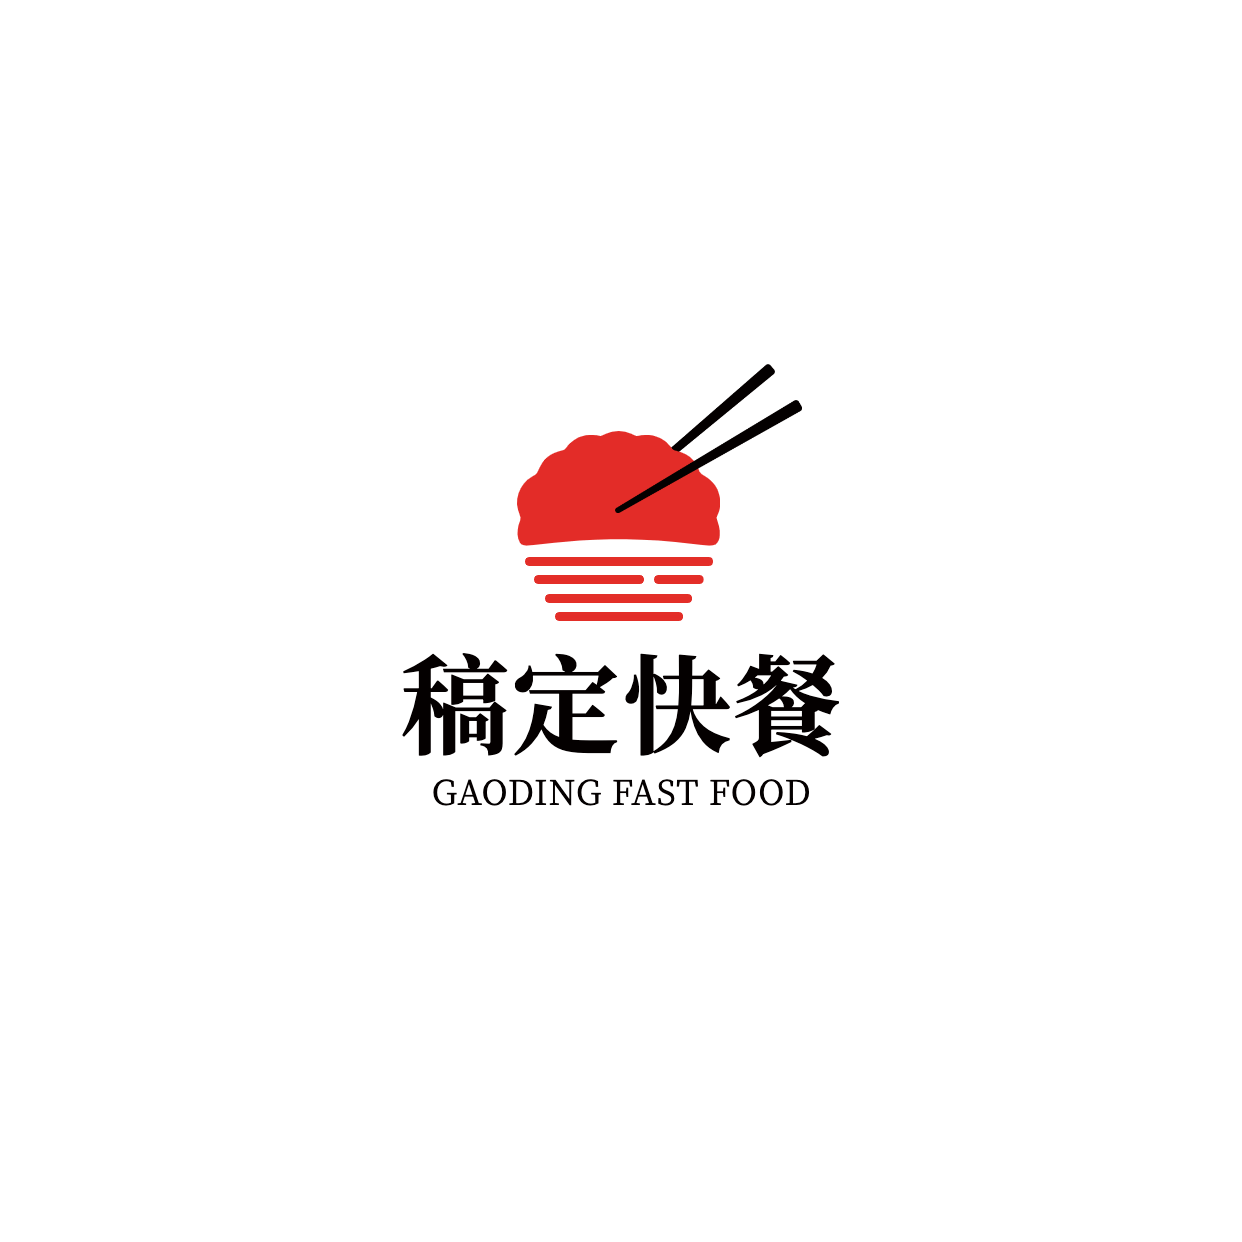 中餐正餐品牌宣传简约LOGO图形